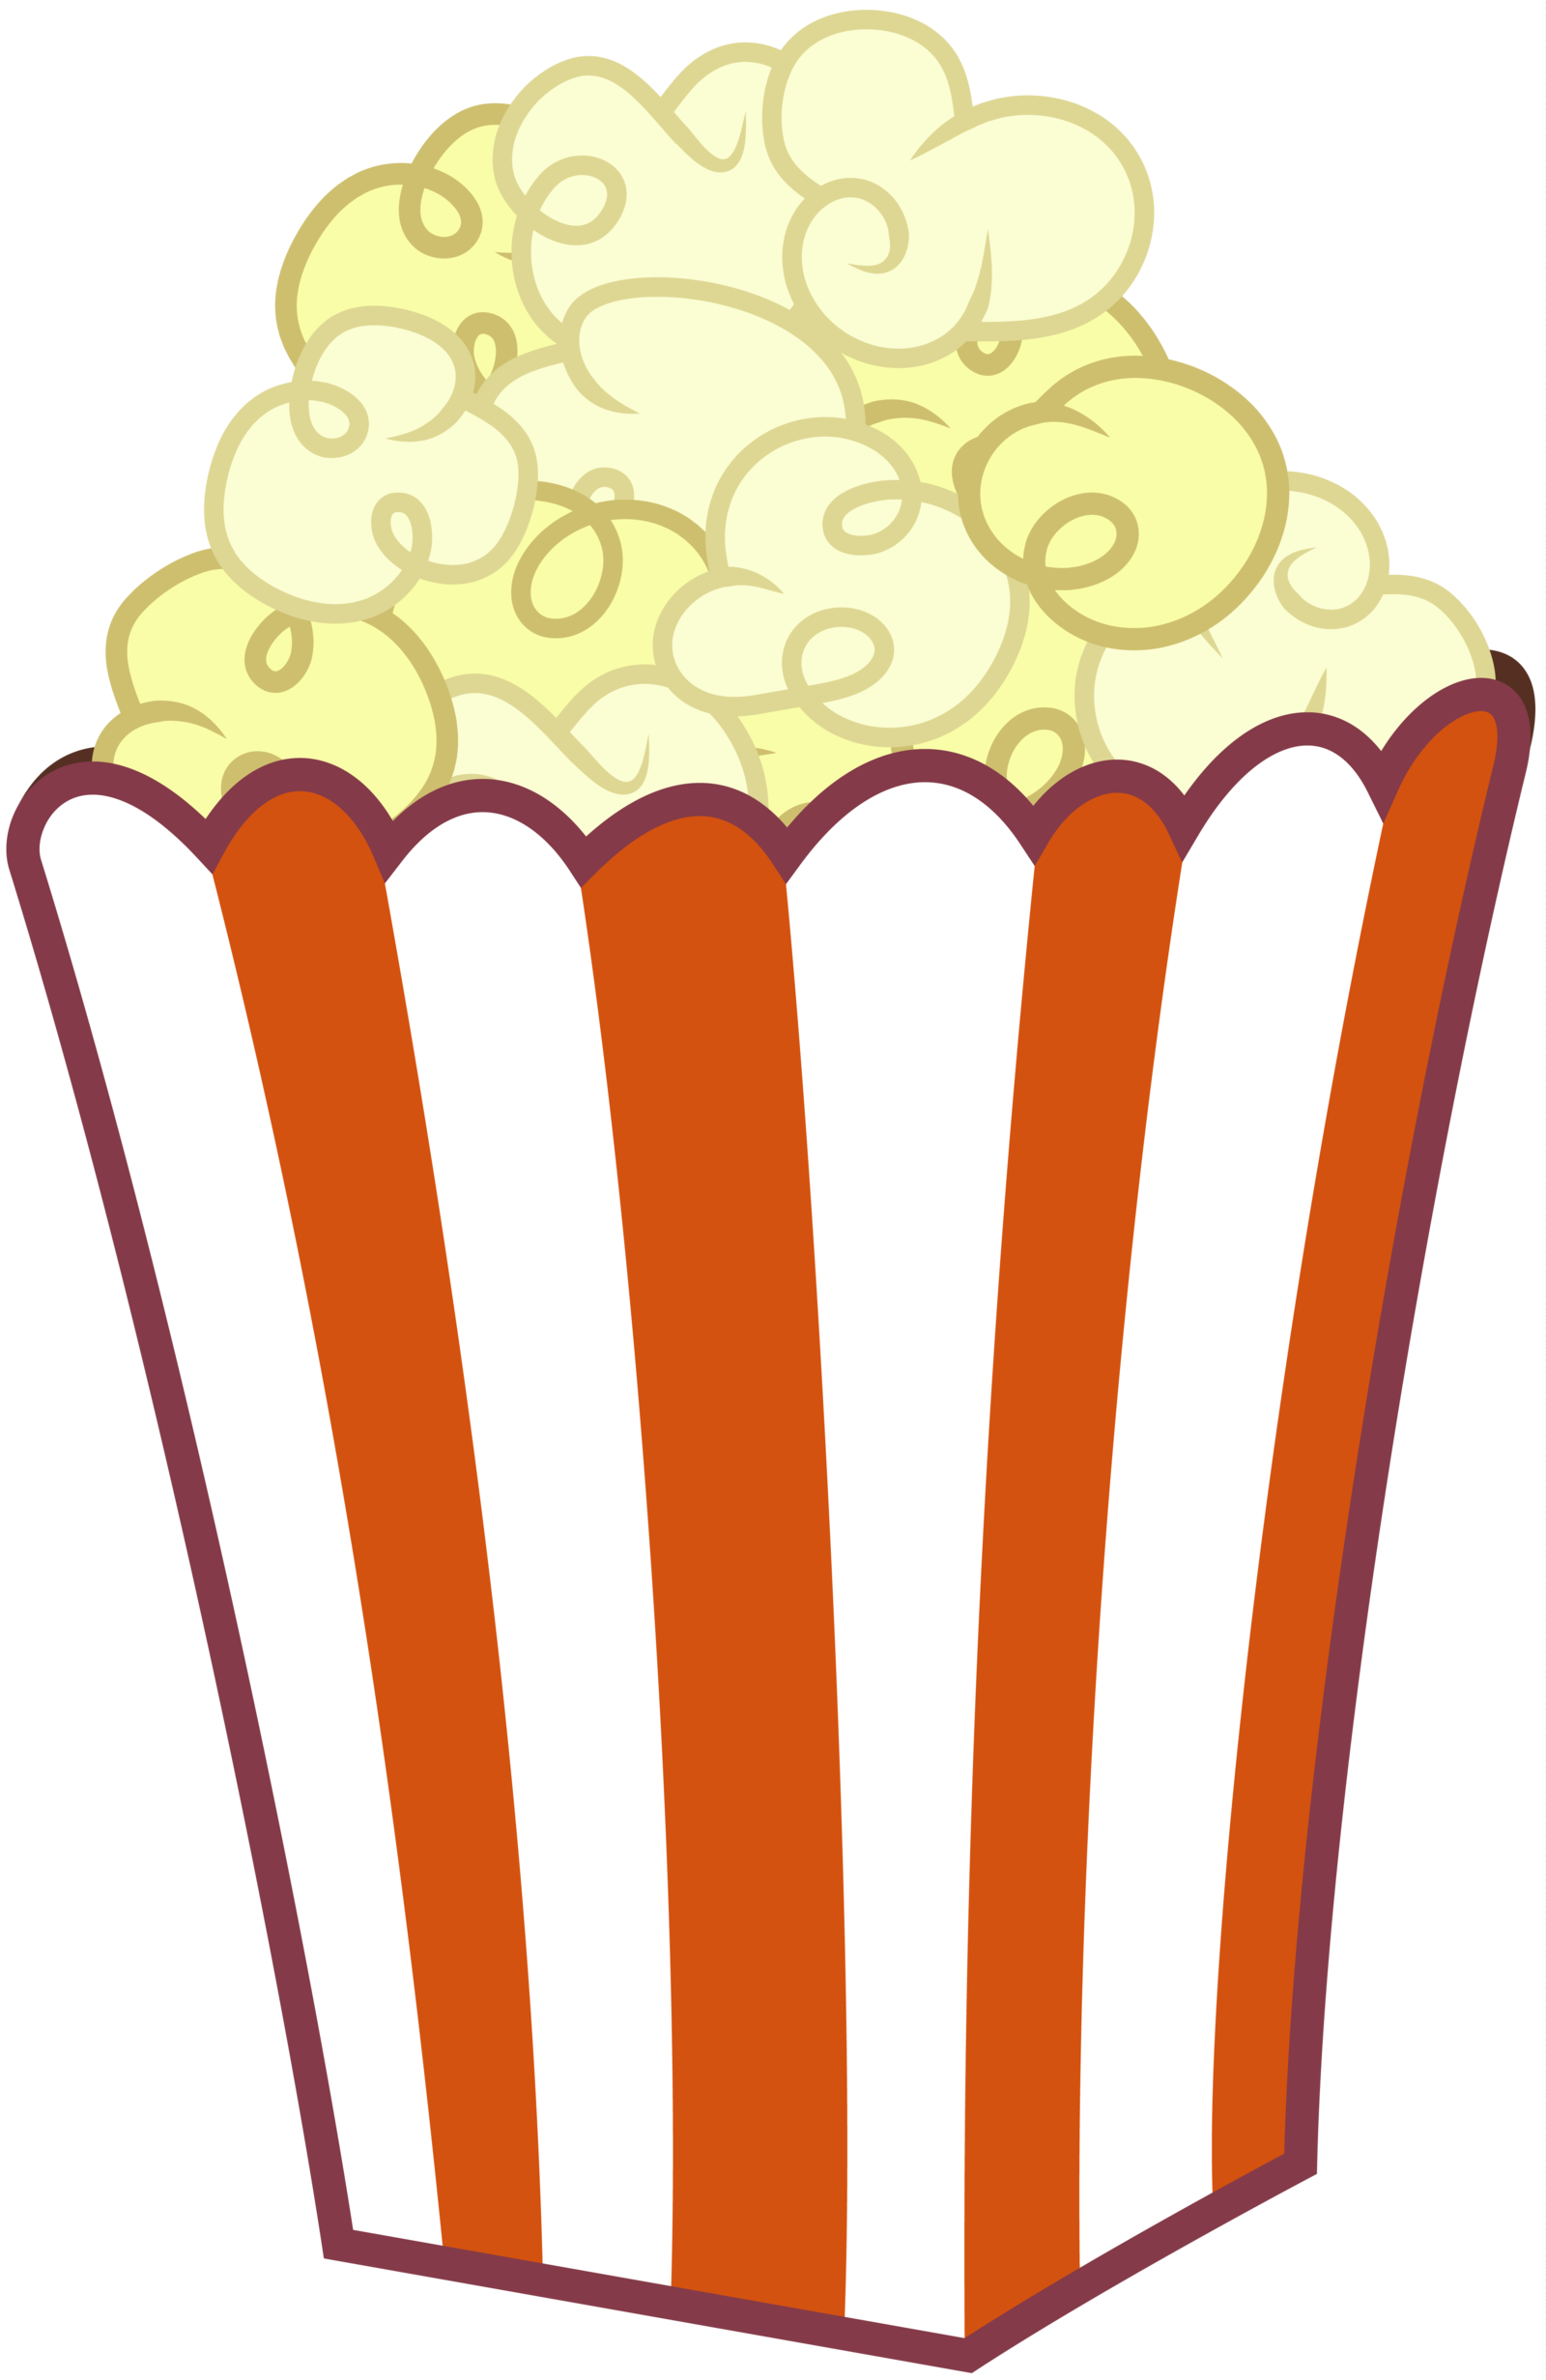 Popcorn black and white carnival popcorn clip art clipart